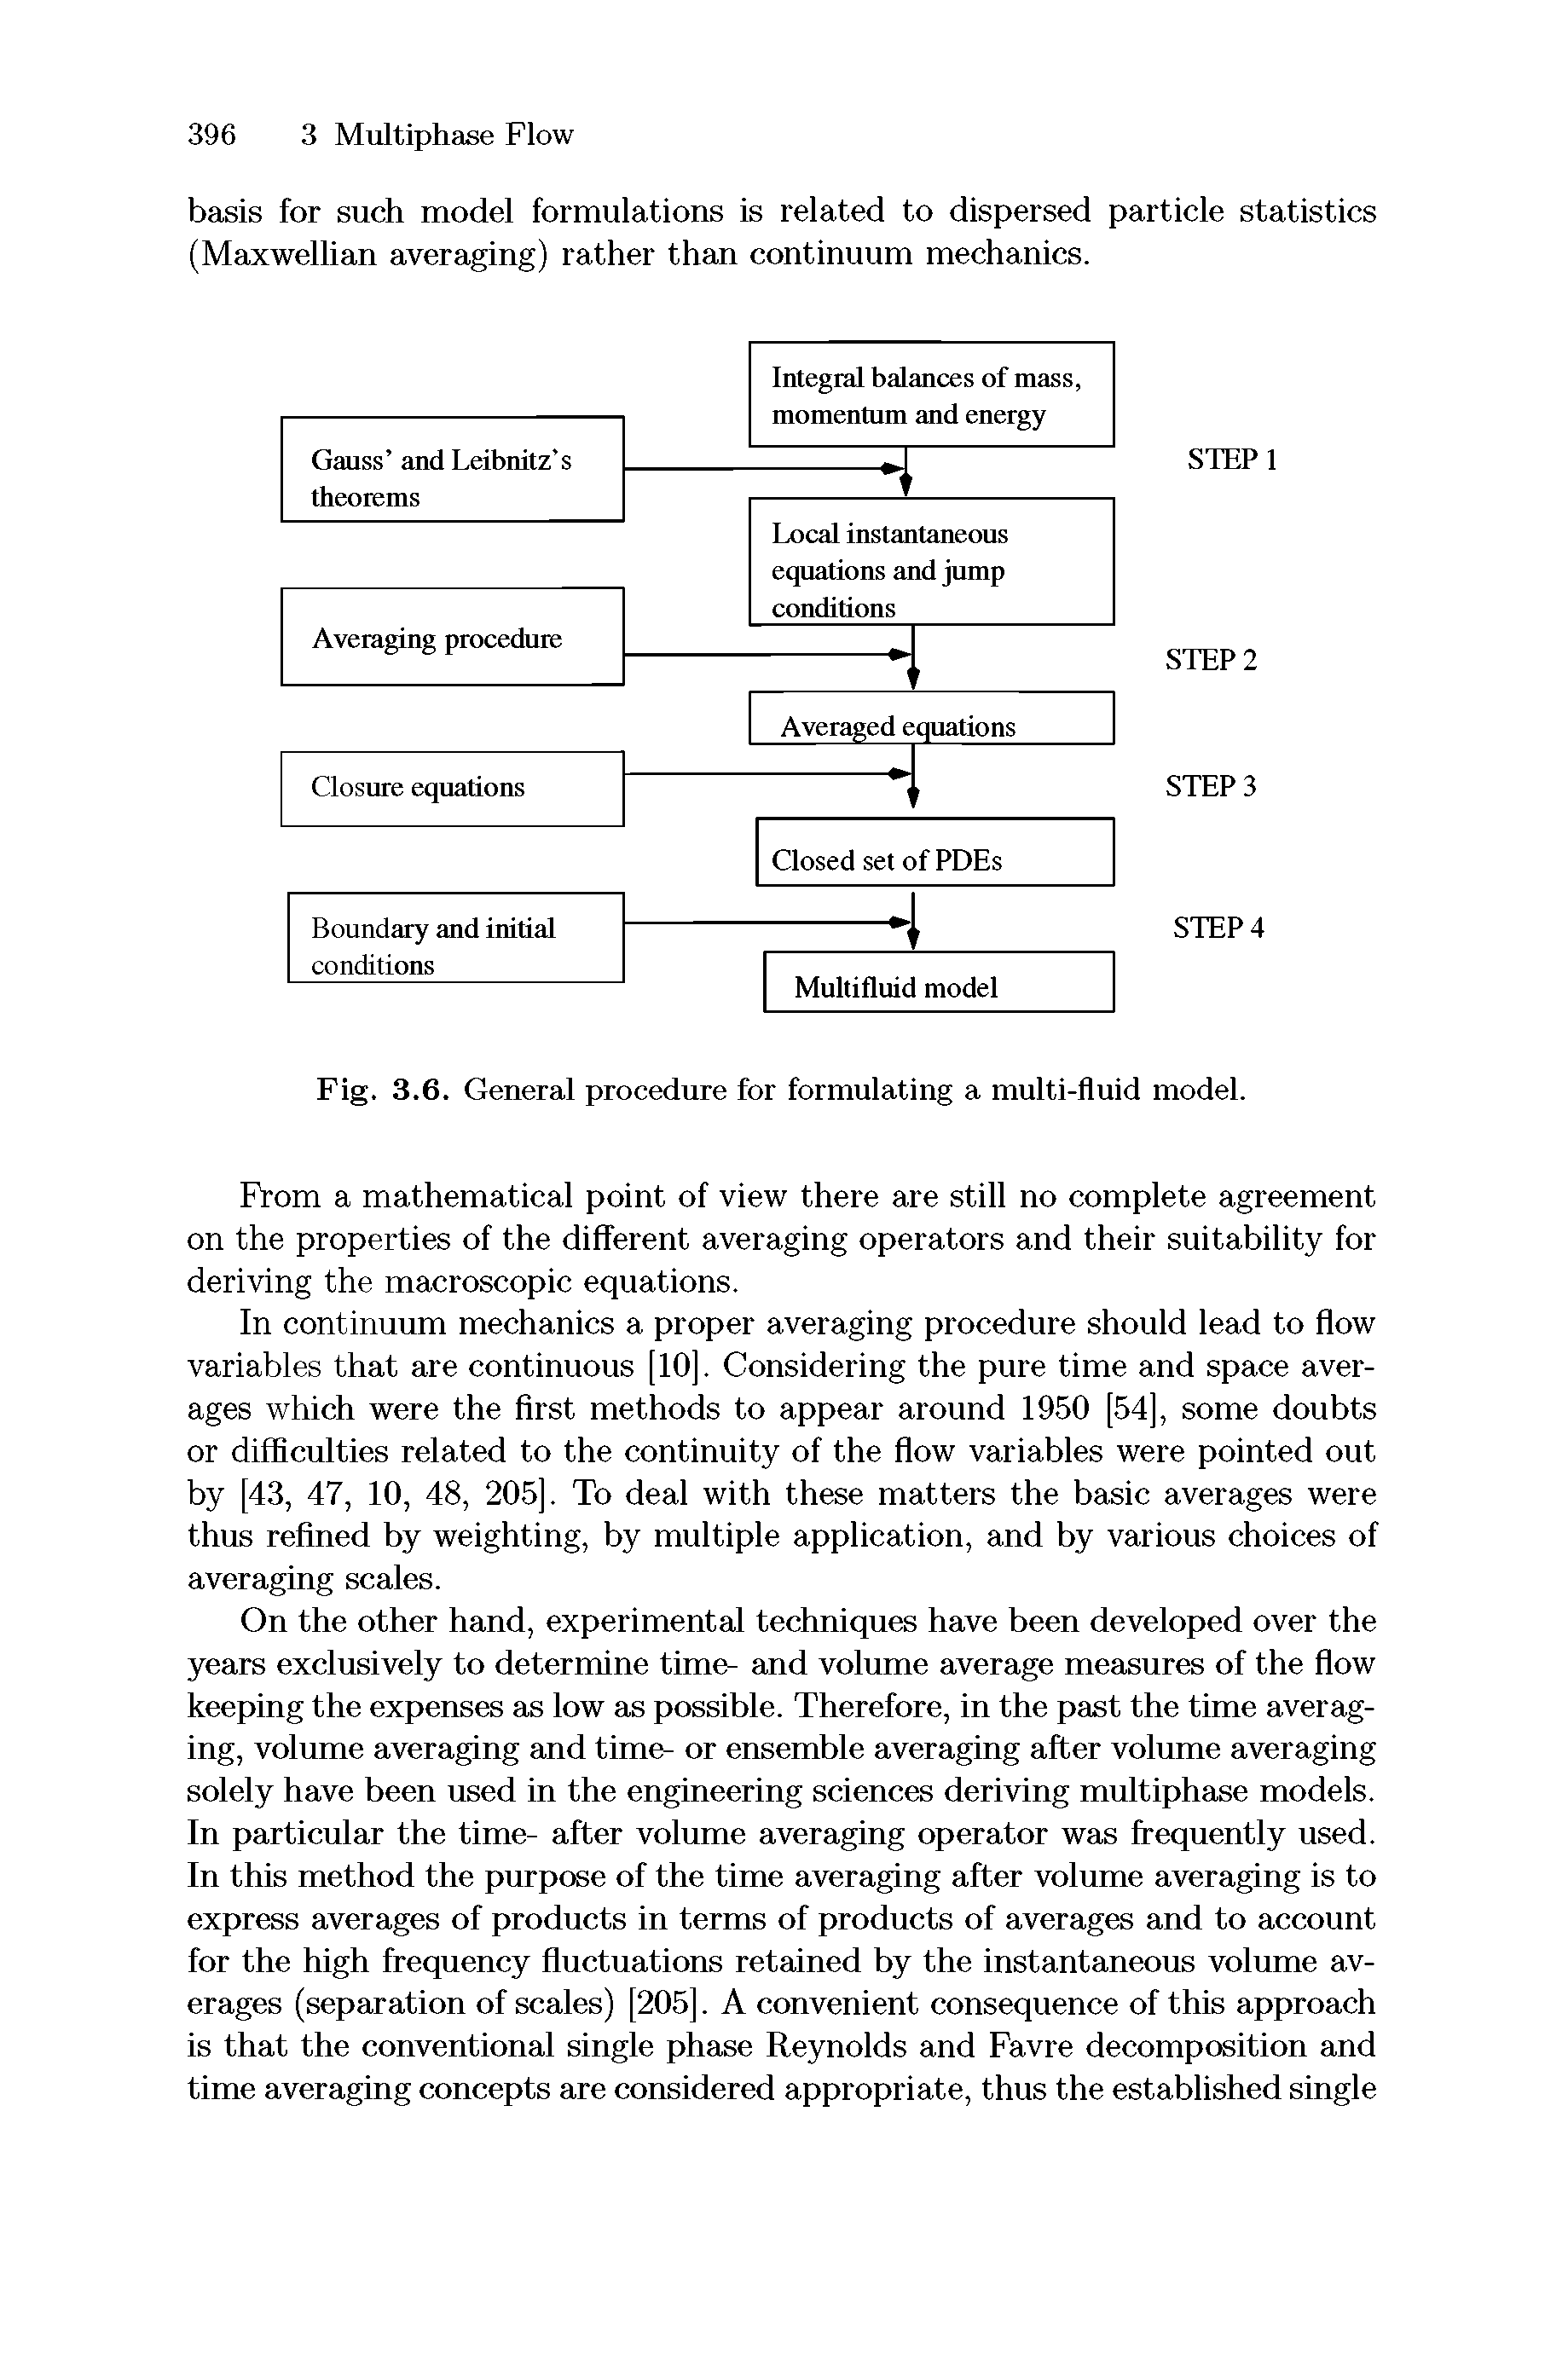 Fig. 3.6. General procedure for formulating a multi-fluid model.